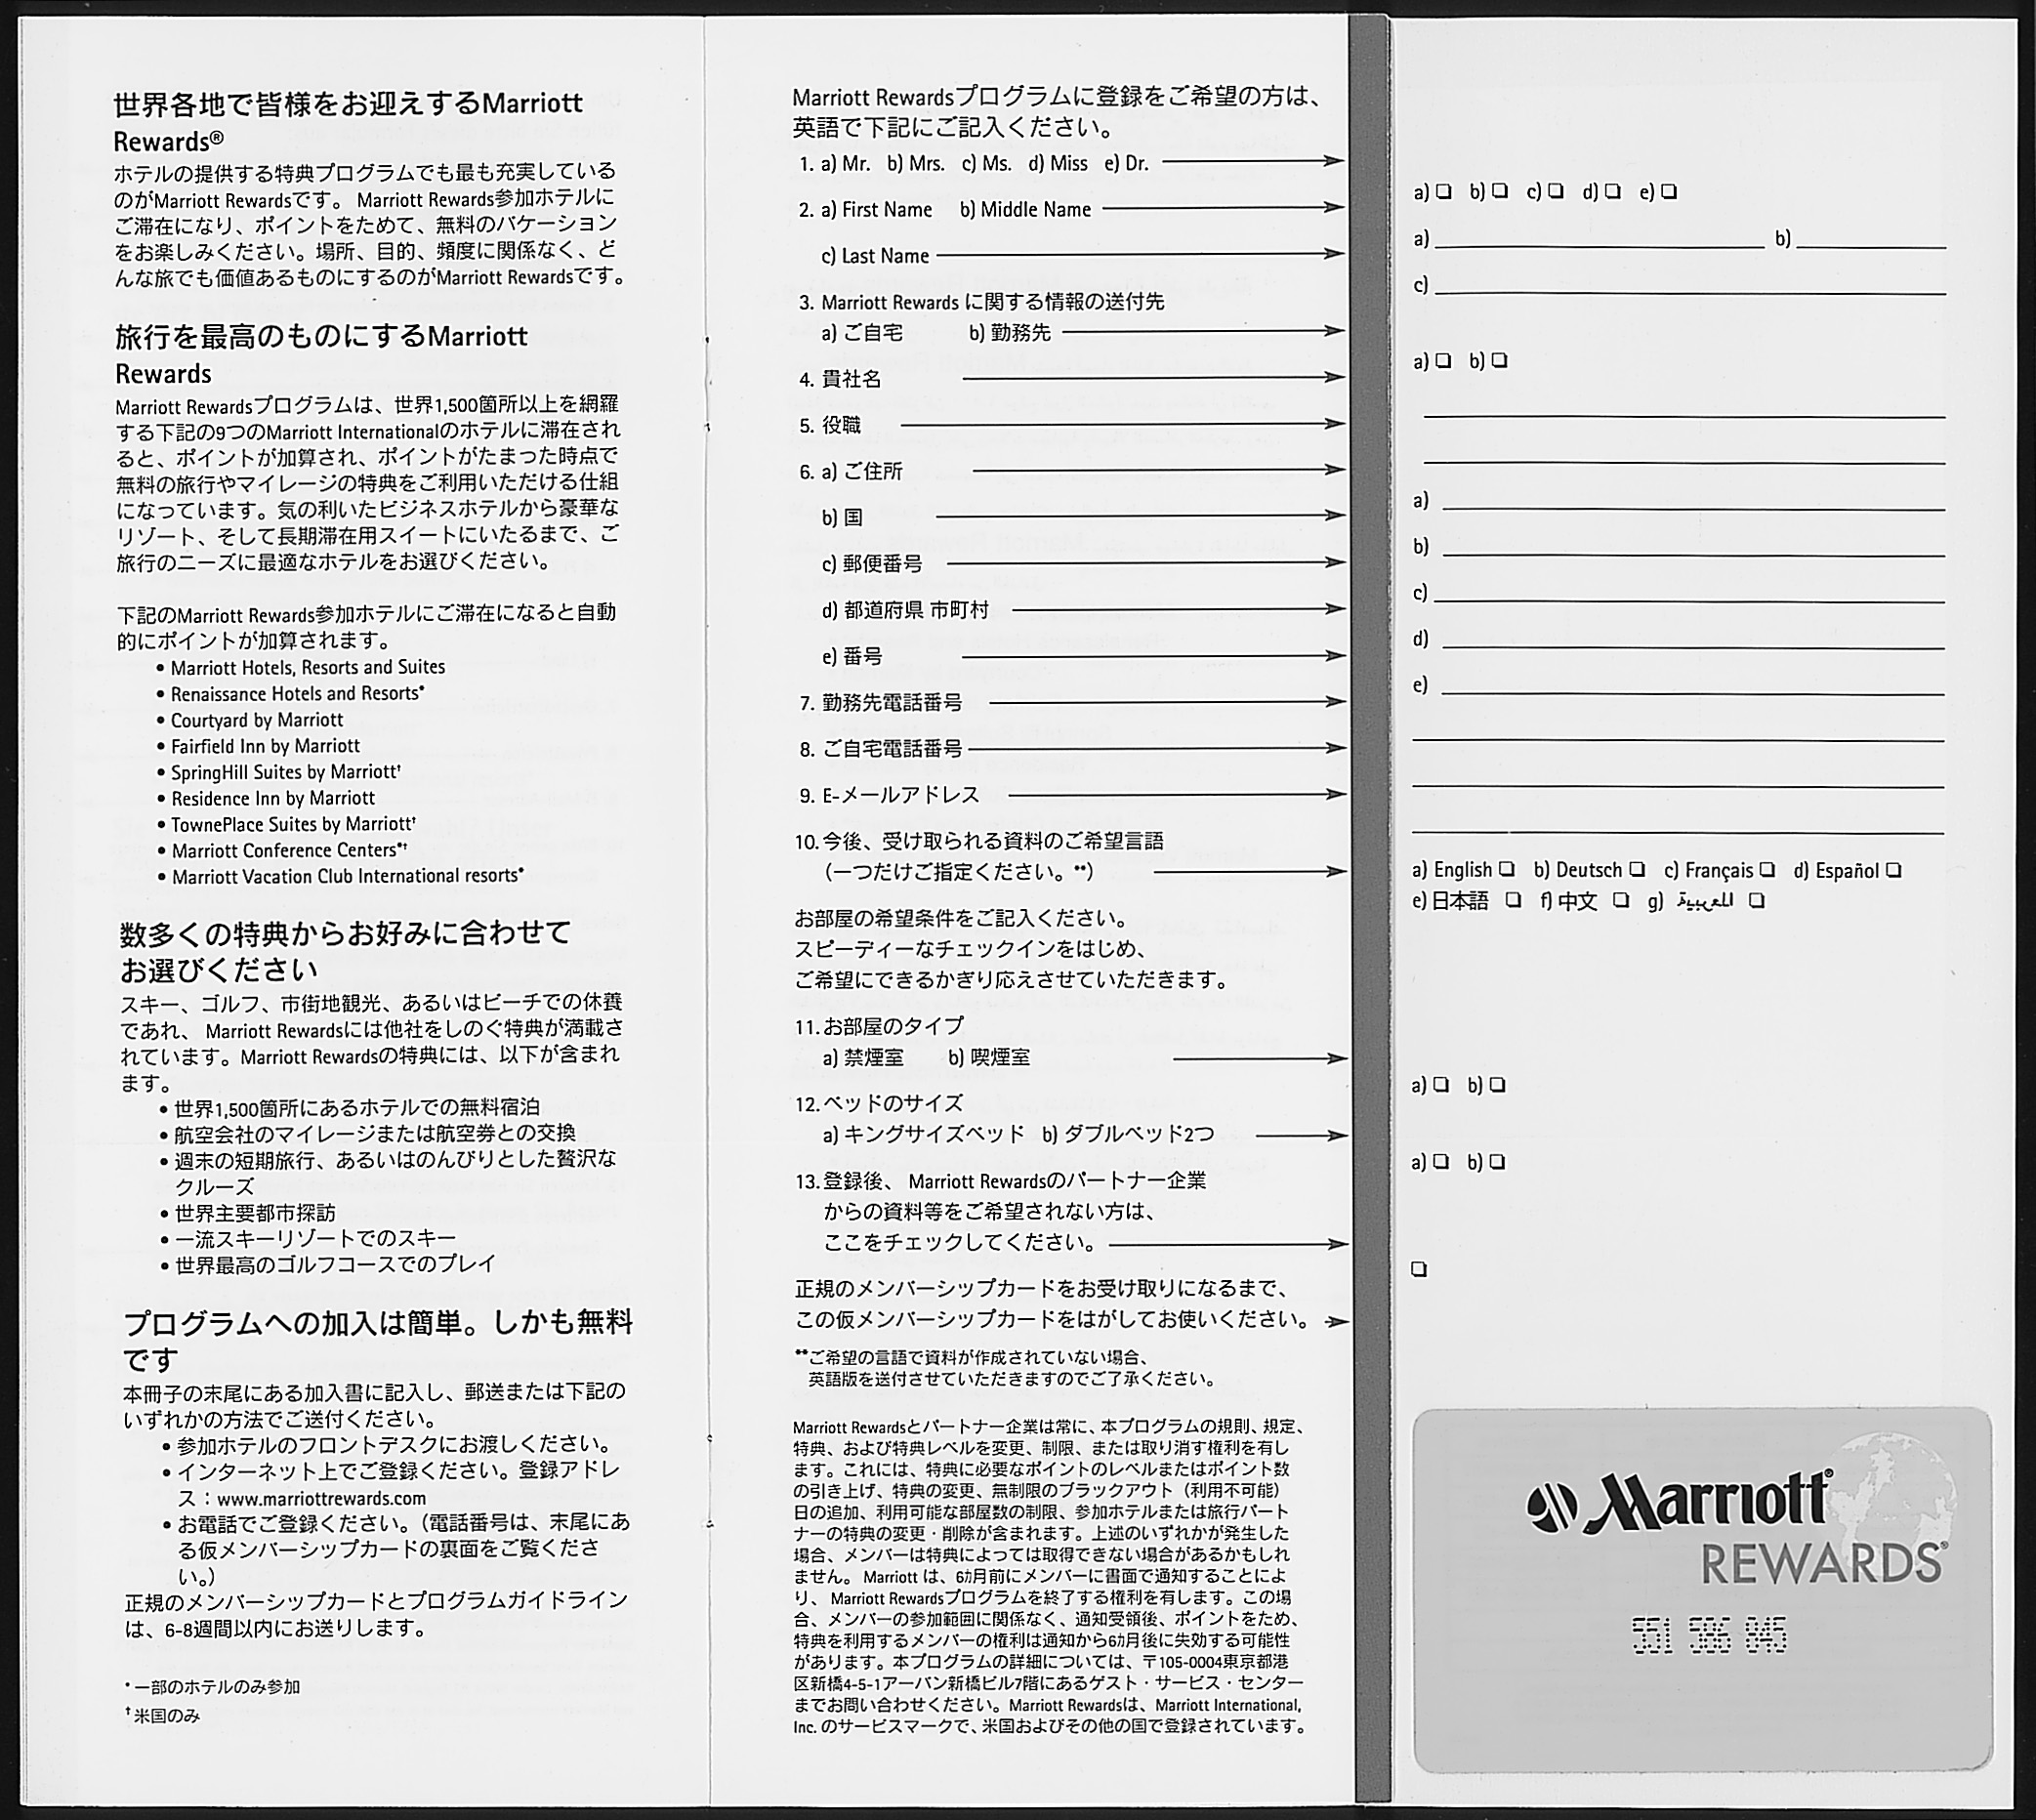 ホテルのカウンターに置かれている「マリオット・リワード」の申込書。各国の言葉で書かれている。申し込み時に、申込書下についているカードが、仮カードして即時発行される